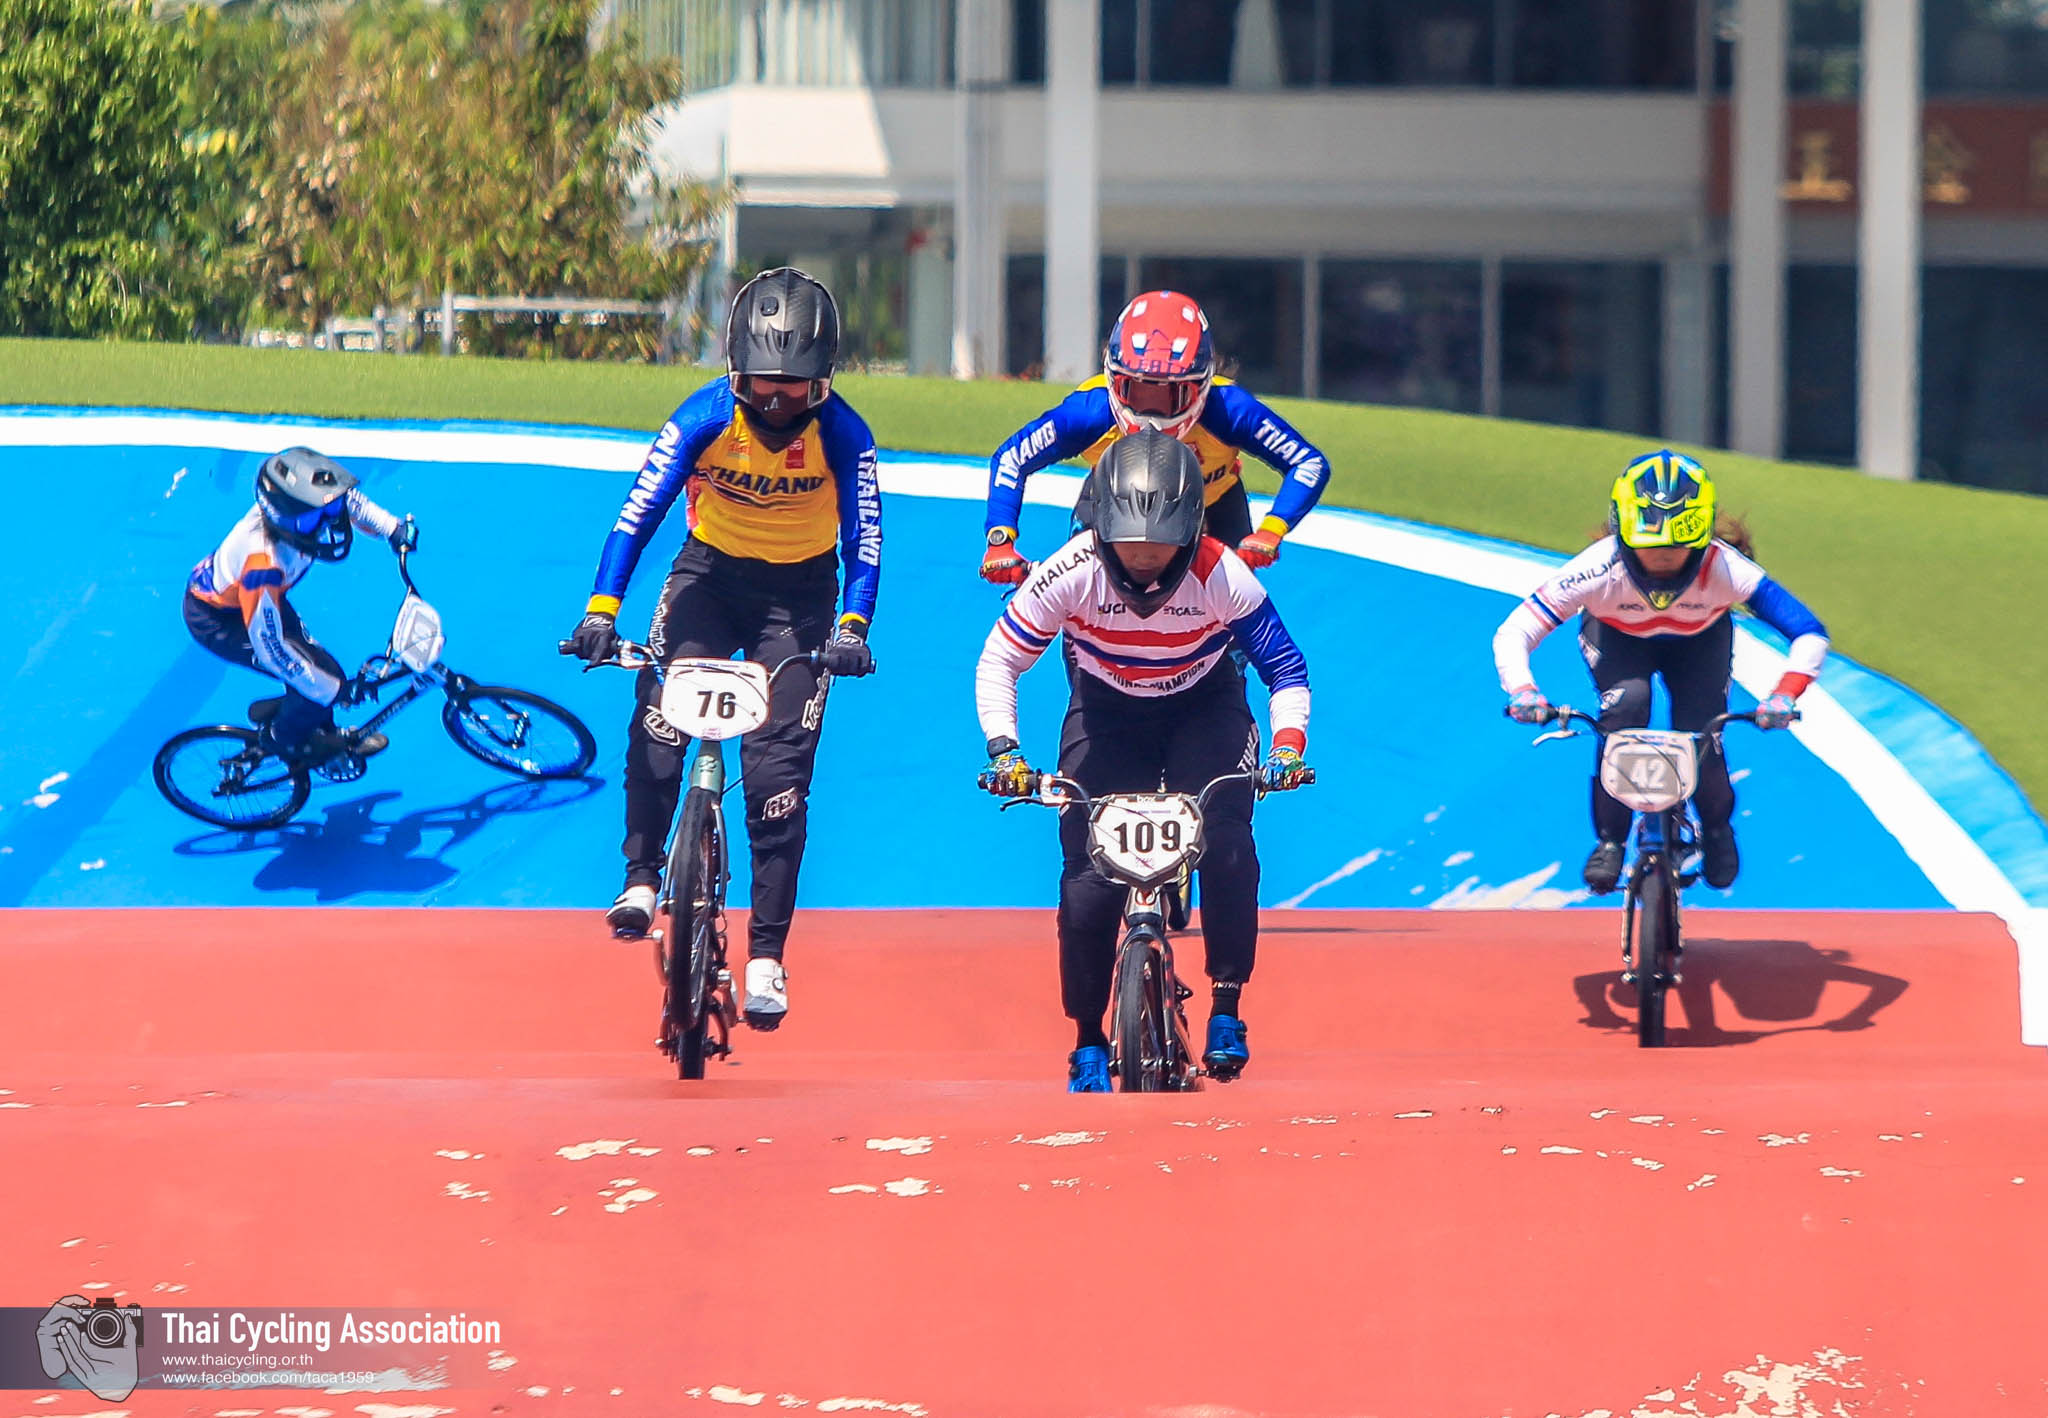 การแข่งขันจักรยานประเภทบีเอ็มเอ็กซ์ ชิงแชมป์ประเทศไทย ชิงถ้วยพระราชทานฯ สนามที่ 5  ประจำปี 2566